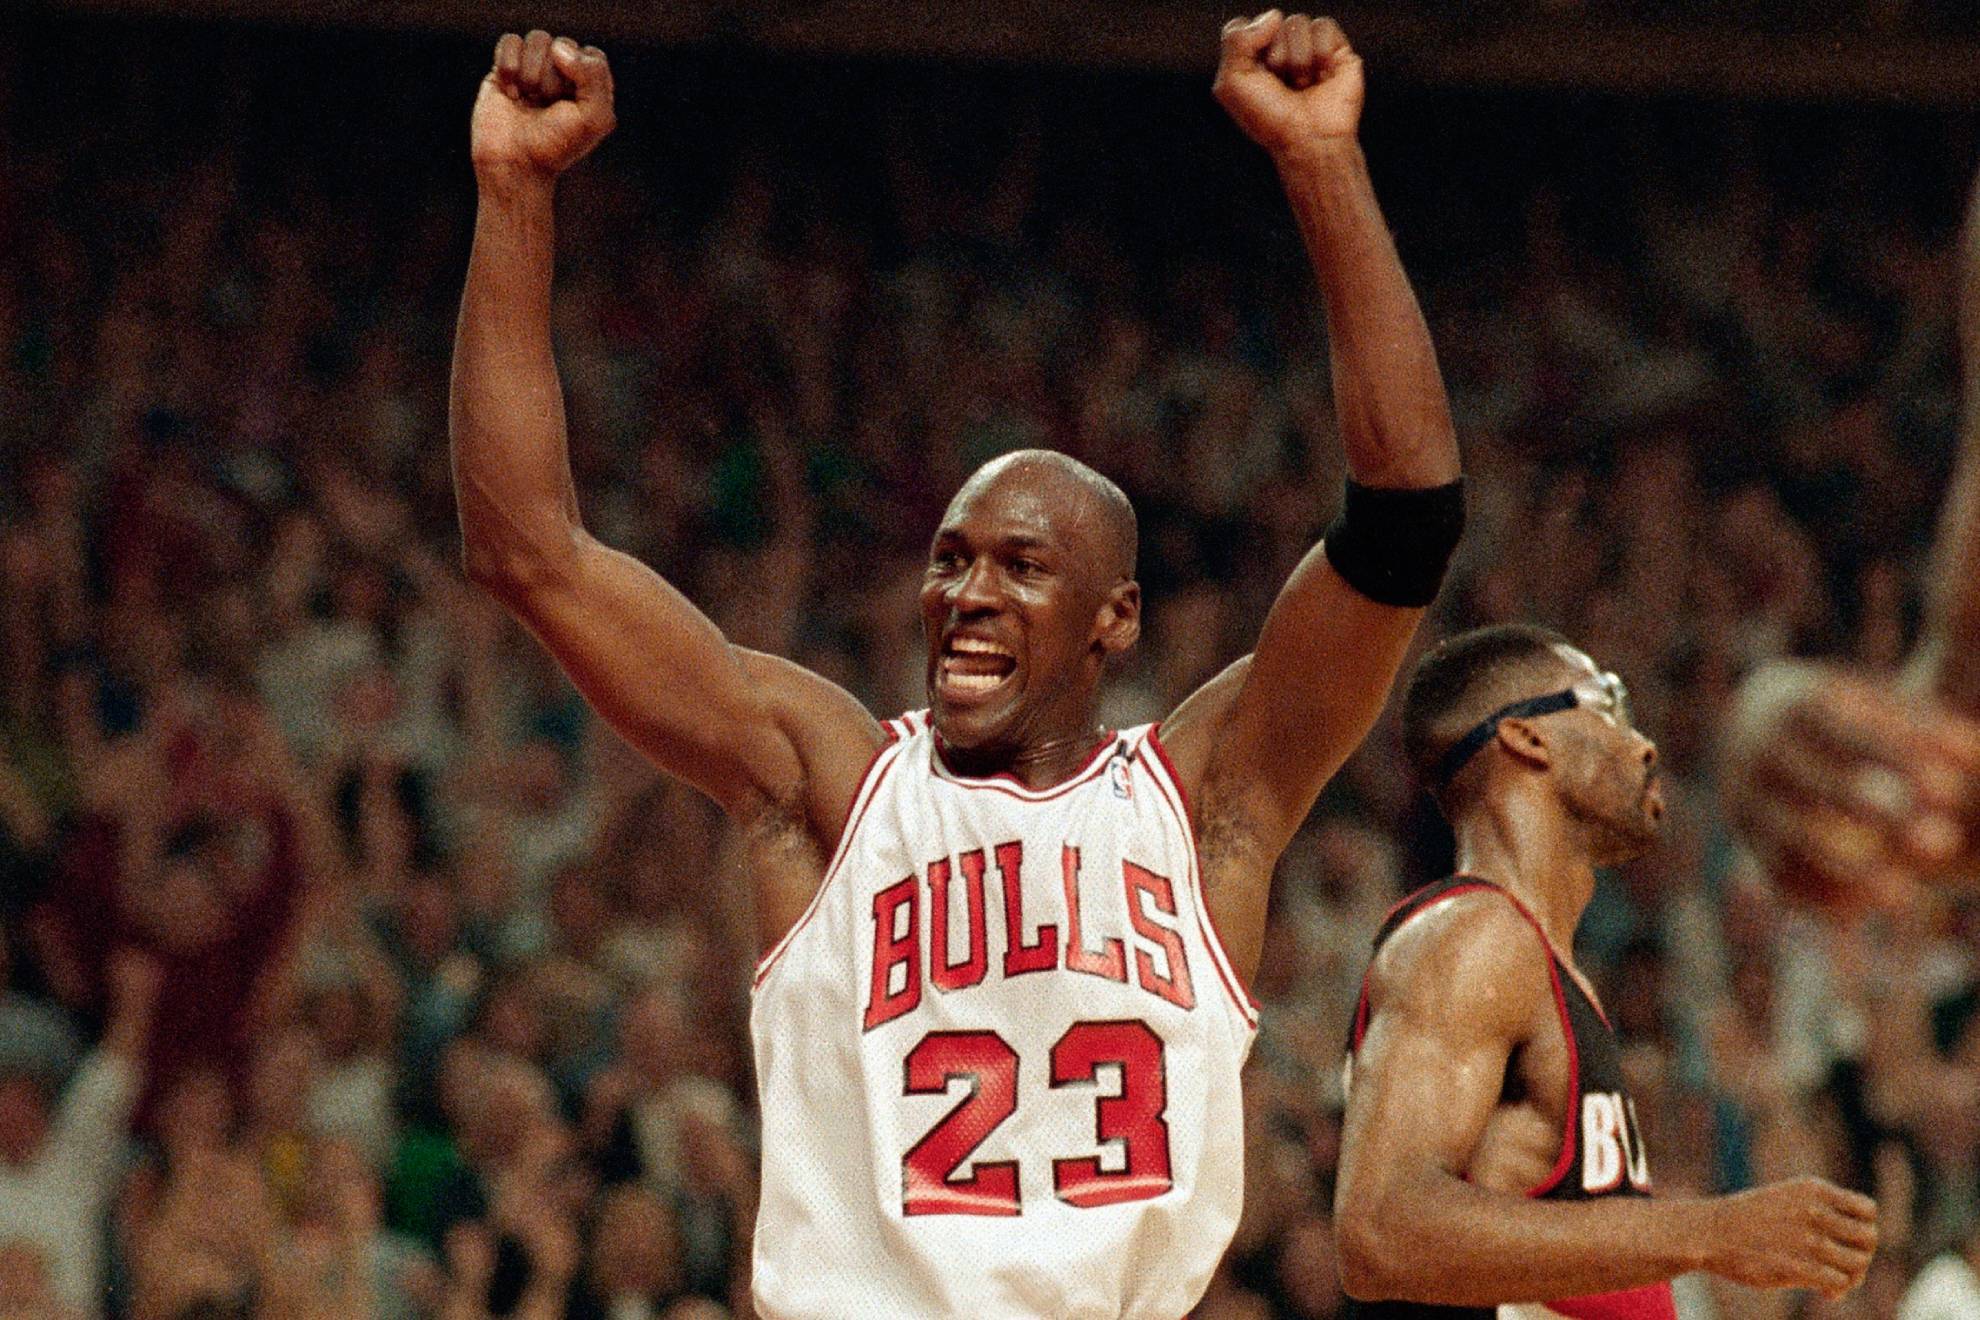 Michael Jordan port con orgullo el nmero 23 durante su carrera en la NBA